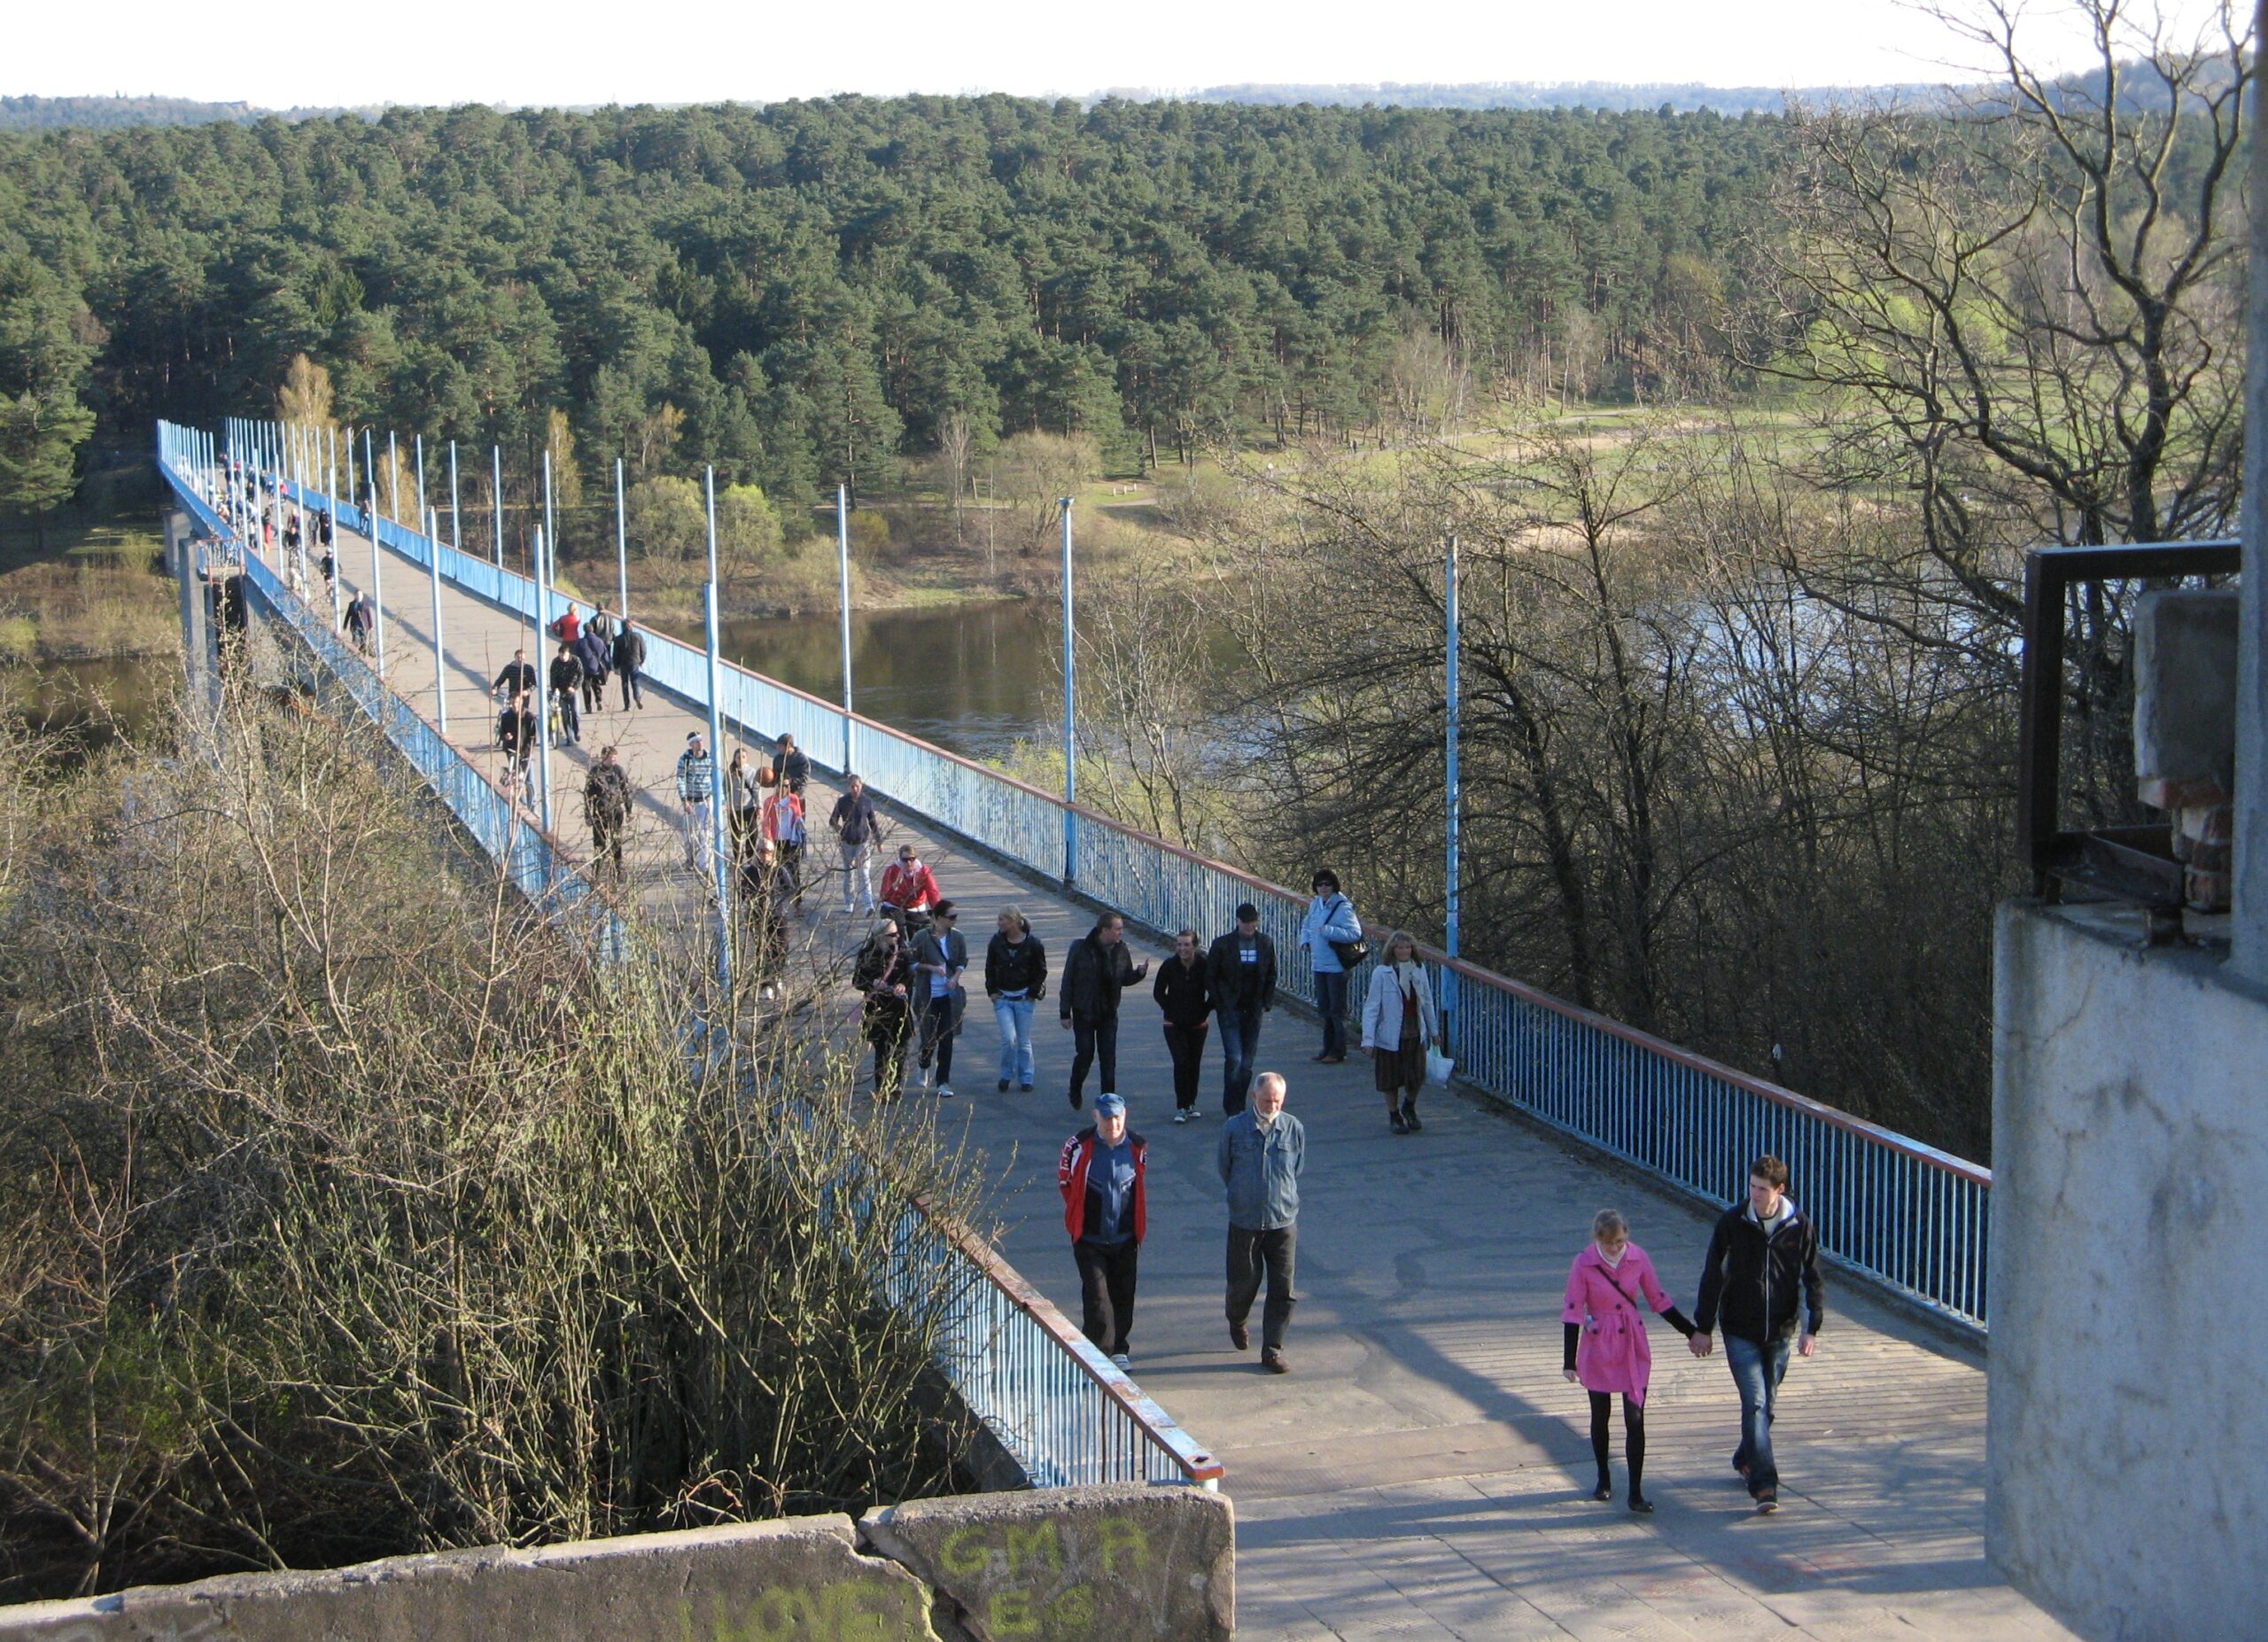 Pėsčiųjų (Trijų mergelių) tiltas per Nemuną į Panemunės šilą. 2010 m. Fotogr. D. Giniuvienė [Iš KAVB fondų]